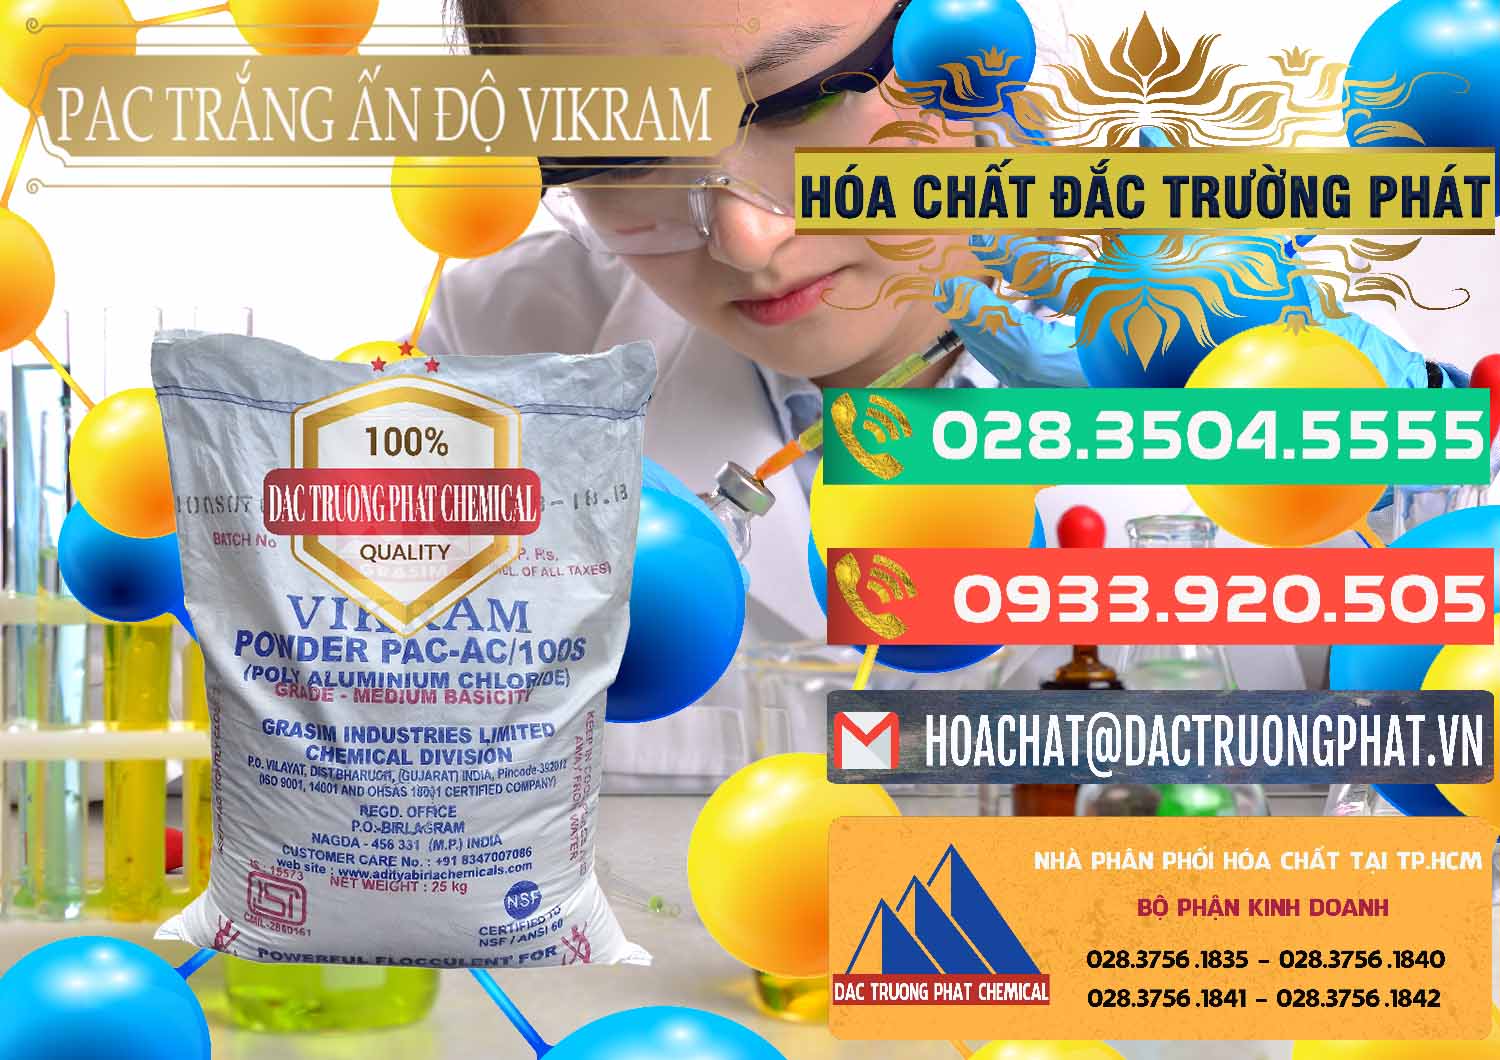 Cty chuyên cung cấp ( bán ) PAC - Polyaluminium Chloride Ấn Độ India Vikram - 0120 - Đơn vị chuyên bán & cung cấp hóa chất tại TP.HCM - congtyhoachat.com.vn